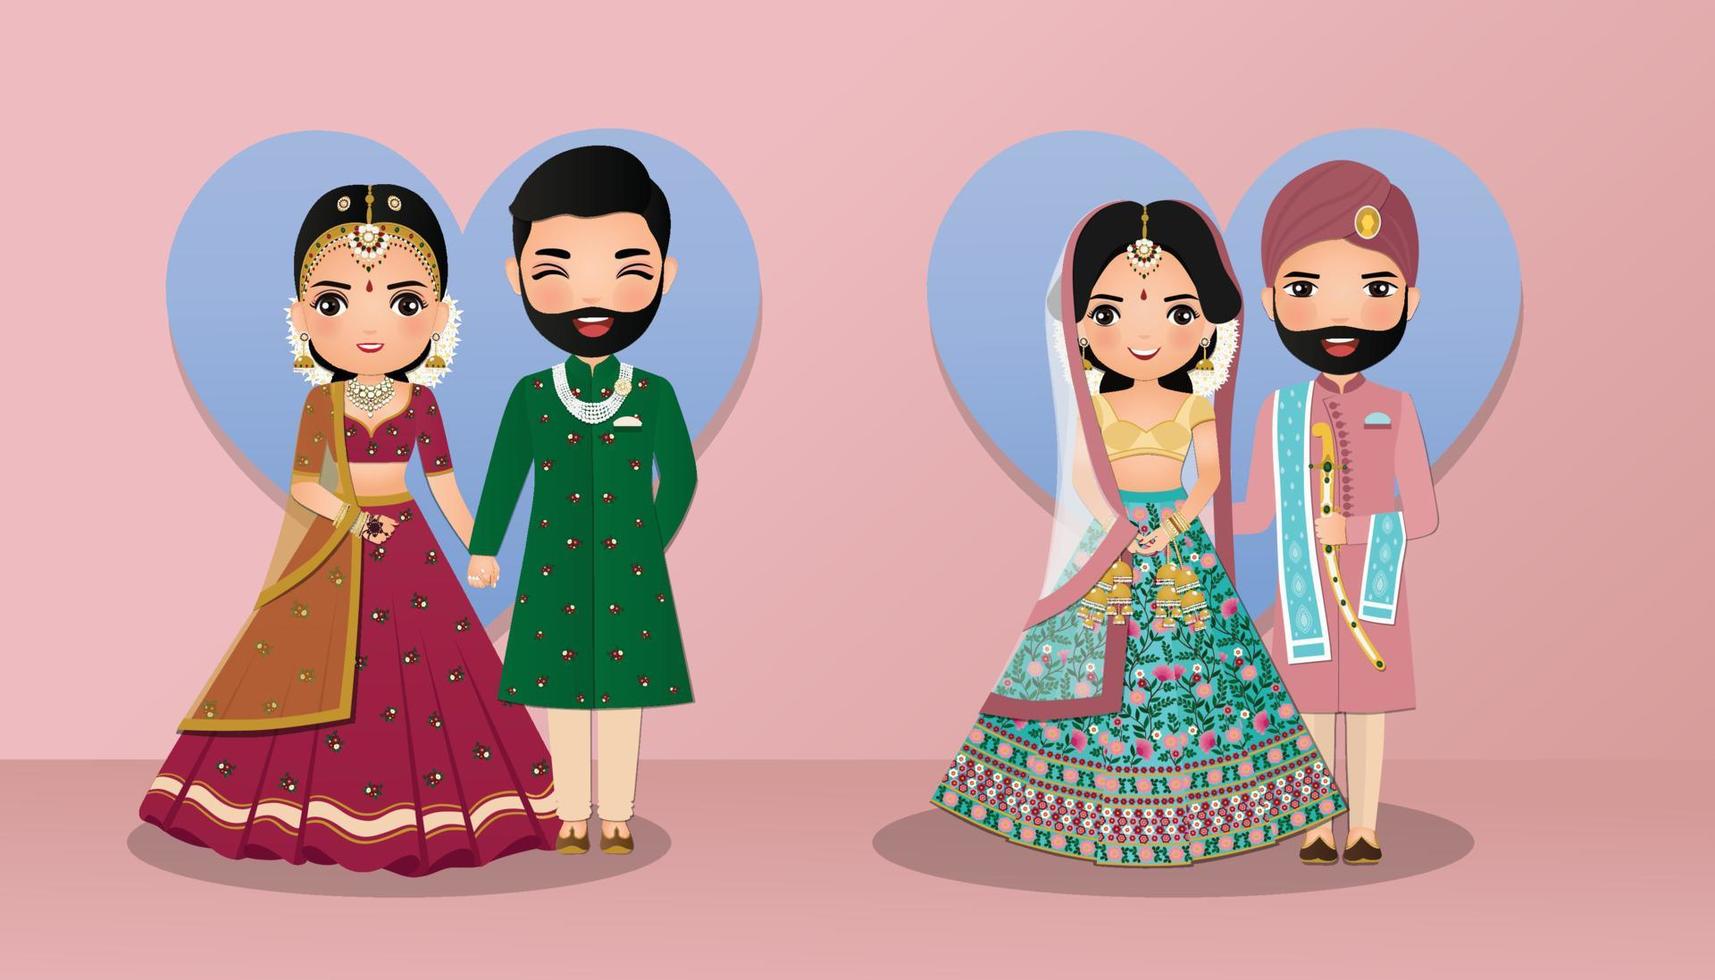 Satz des niedlichen Paares in den traditionellen indischen Kleidkarikaturfiguren Braut und Bräutigam. Hochzeitseinladungskarte. vektor